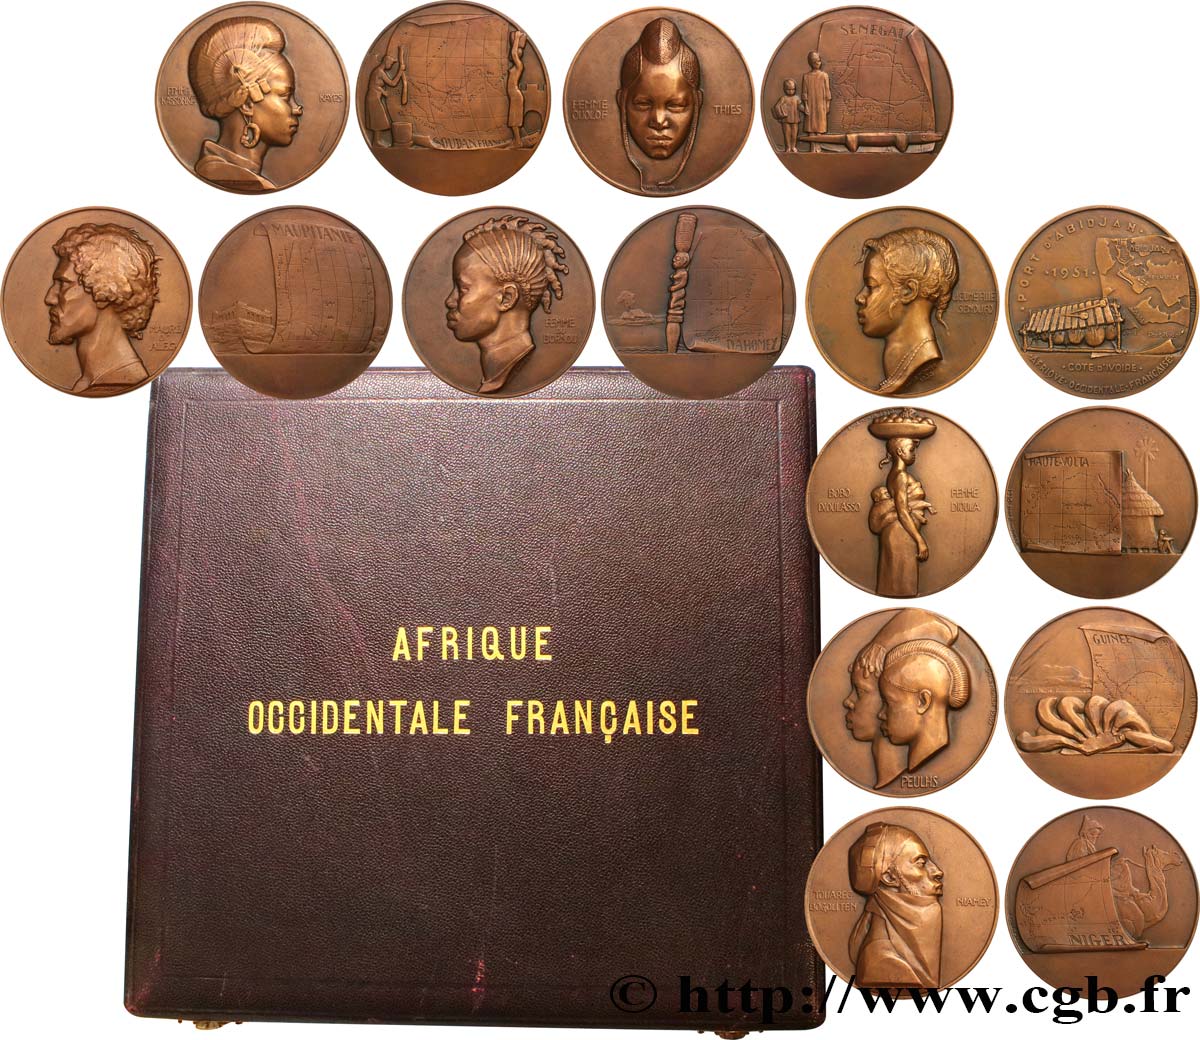 AFRIQUE OCCIDENTALE FRANÇAISE Coffret de 8 médailles, Afrique Occidentale Française, les populations d’Afrique de l’Ouest SUP